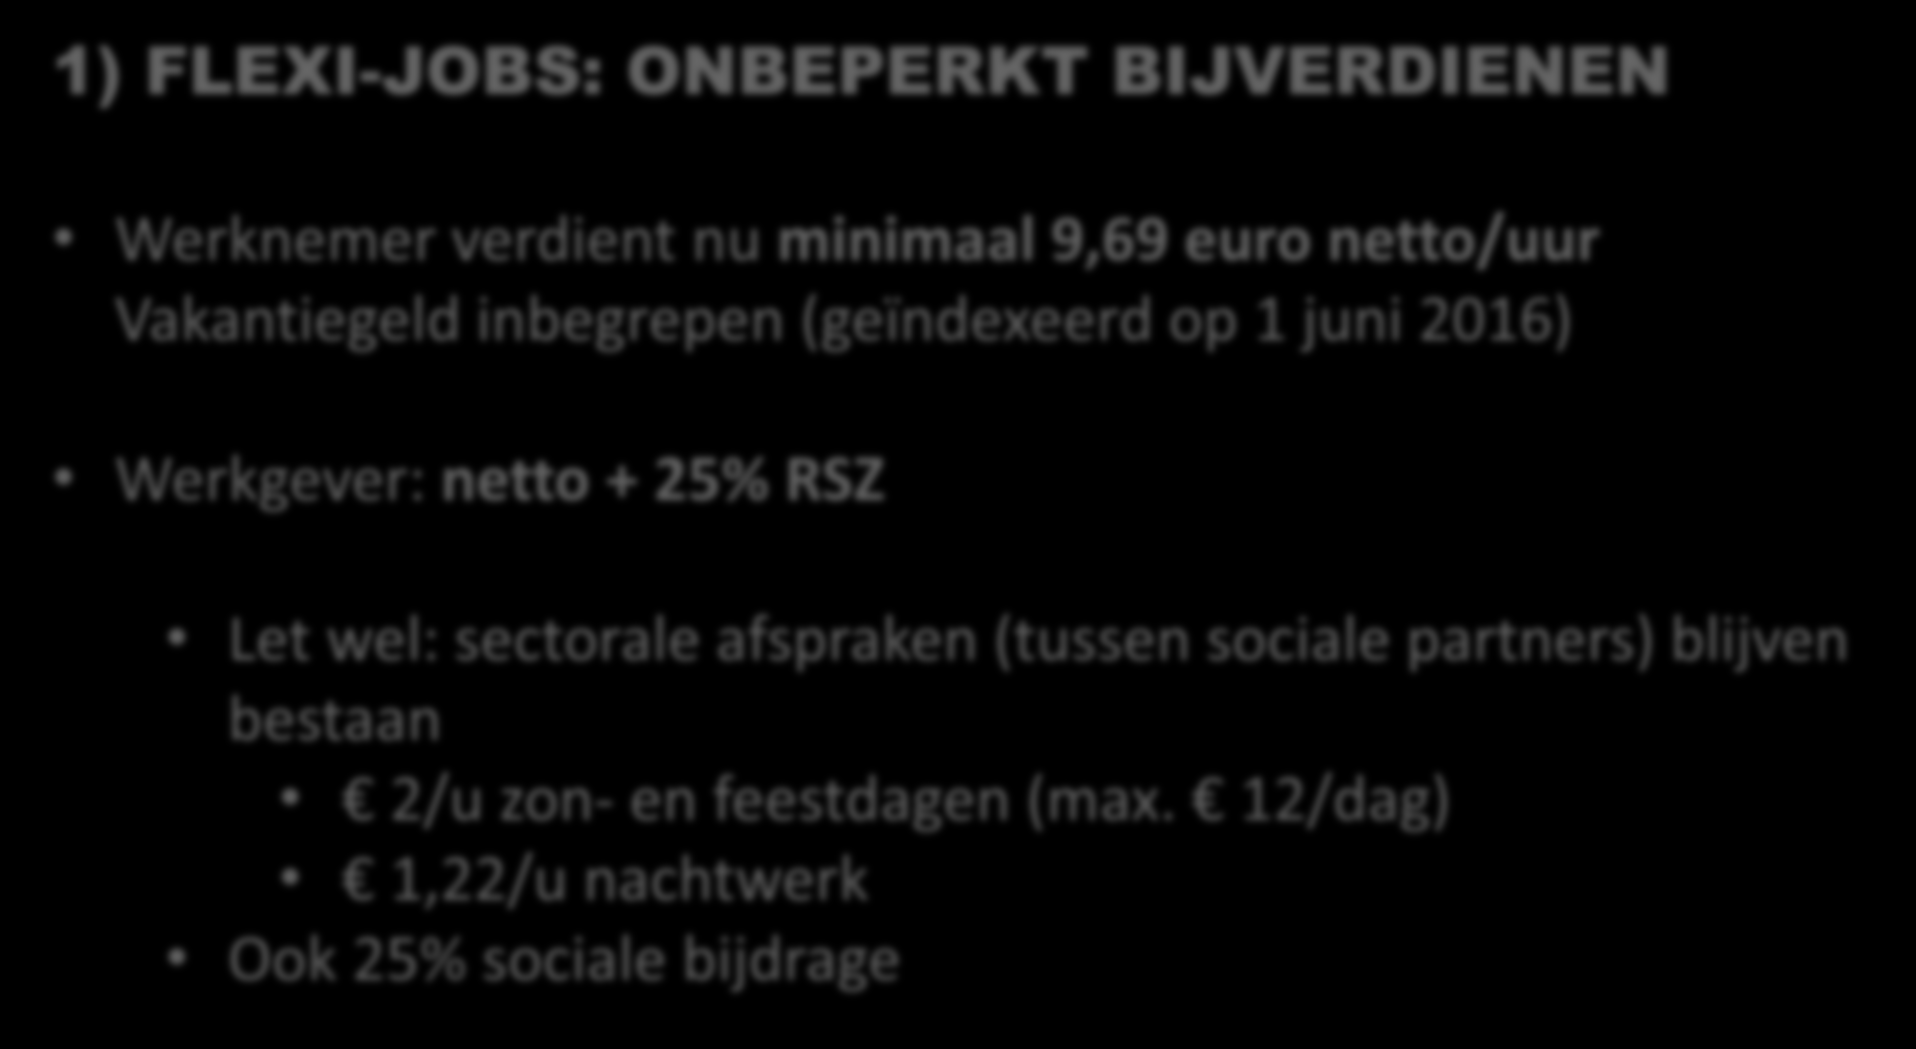 1) FLEXI-JOBS: ONBEPERKT BIJVERDIENEN Werknemer verdient nu minimaal 9,69 euro netto/uur Vakantiegeld inbegrepen (geïndexeerd op 1 juni 2016) Werkgever: netto